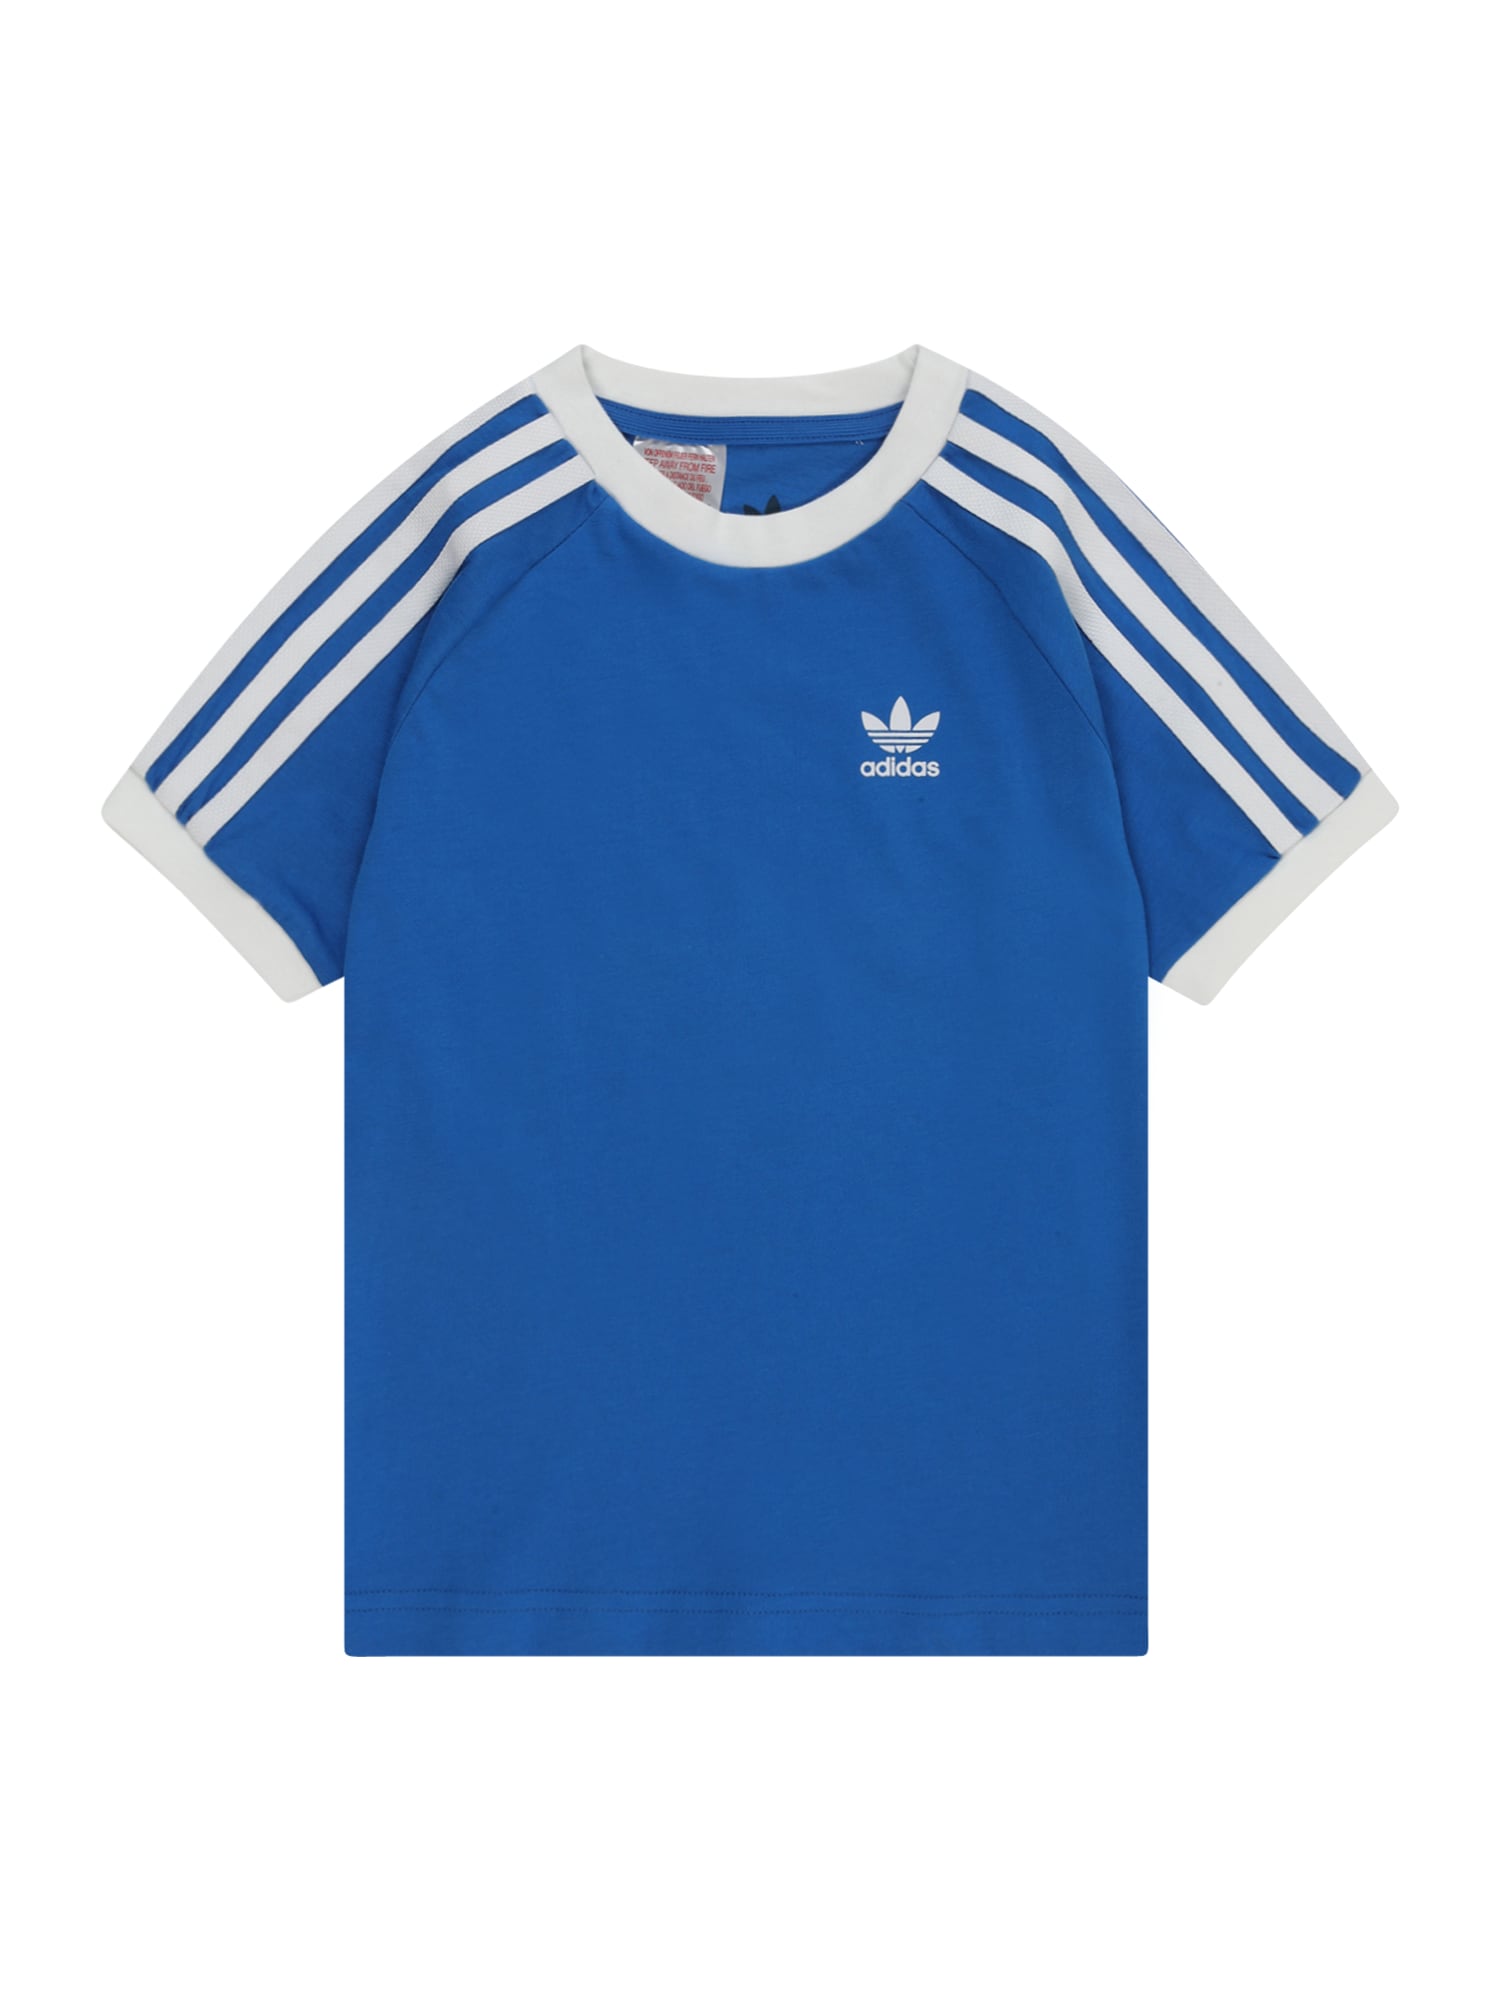 ADIDAS ORIGINALS Marškinėliai '3-Stripes' sodri mėlyna („karališka“) / balta